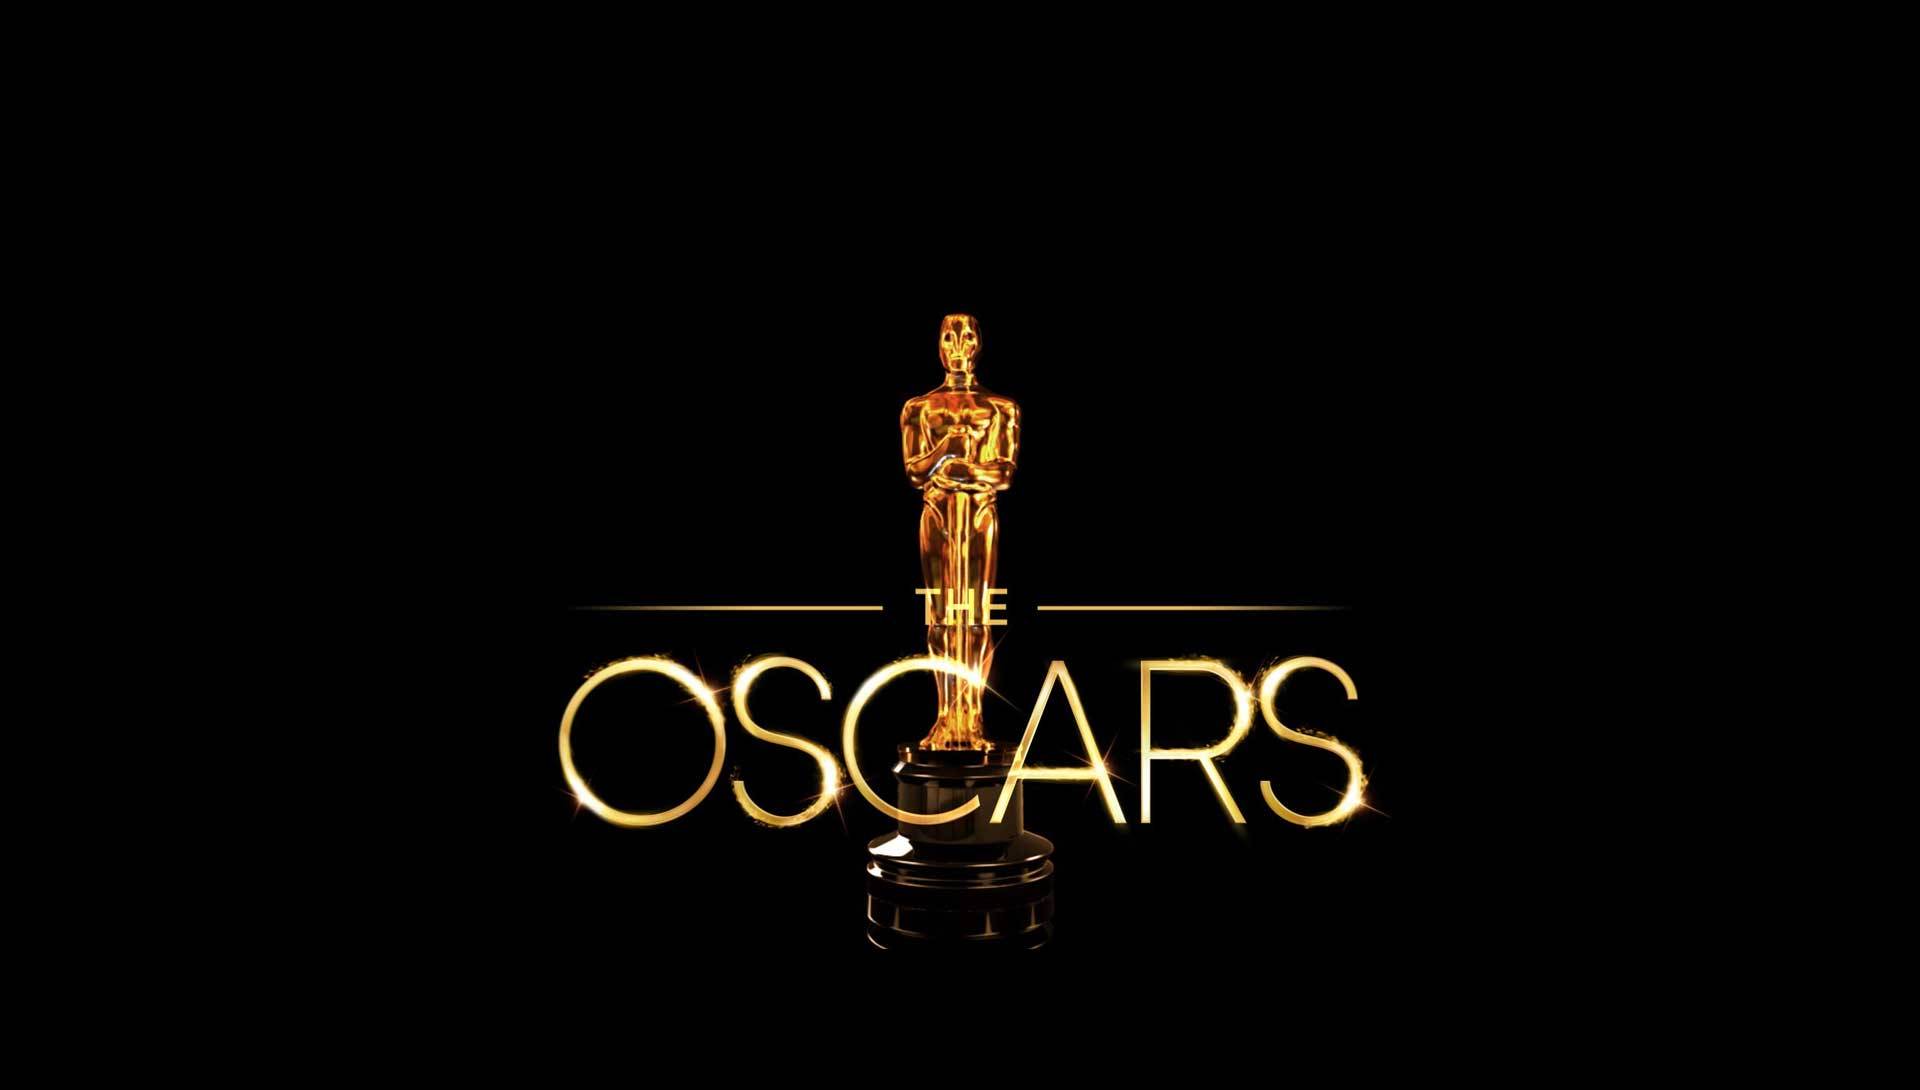 Oscars 2019 : scandales et polémiques à quelques jours de la cérémonie